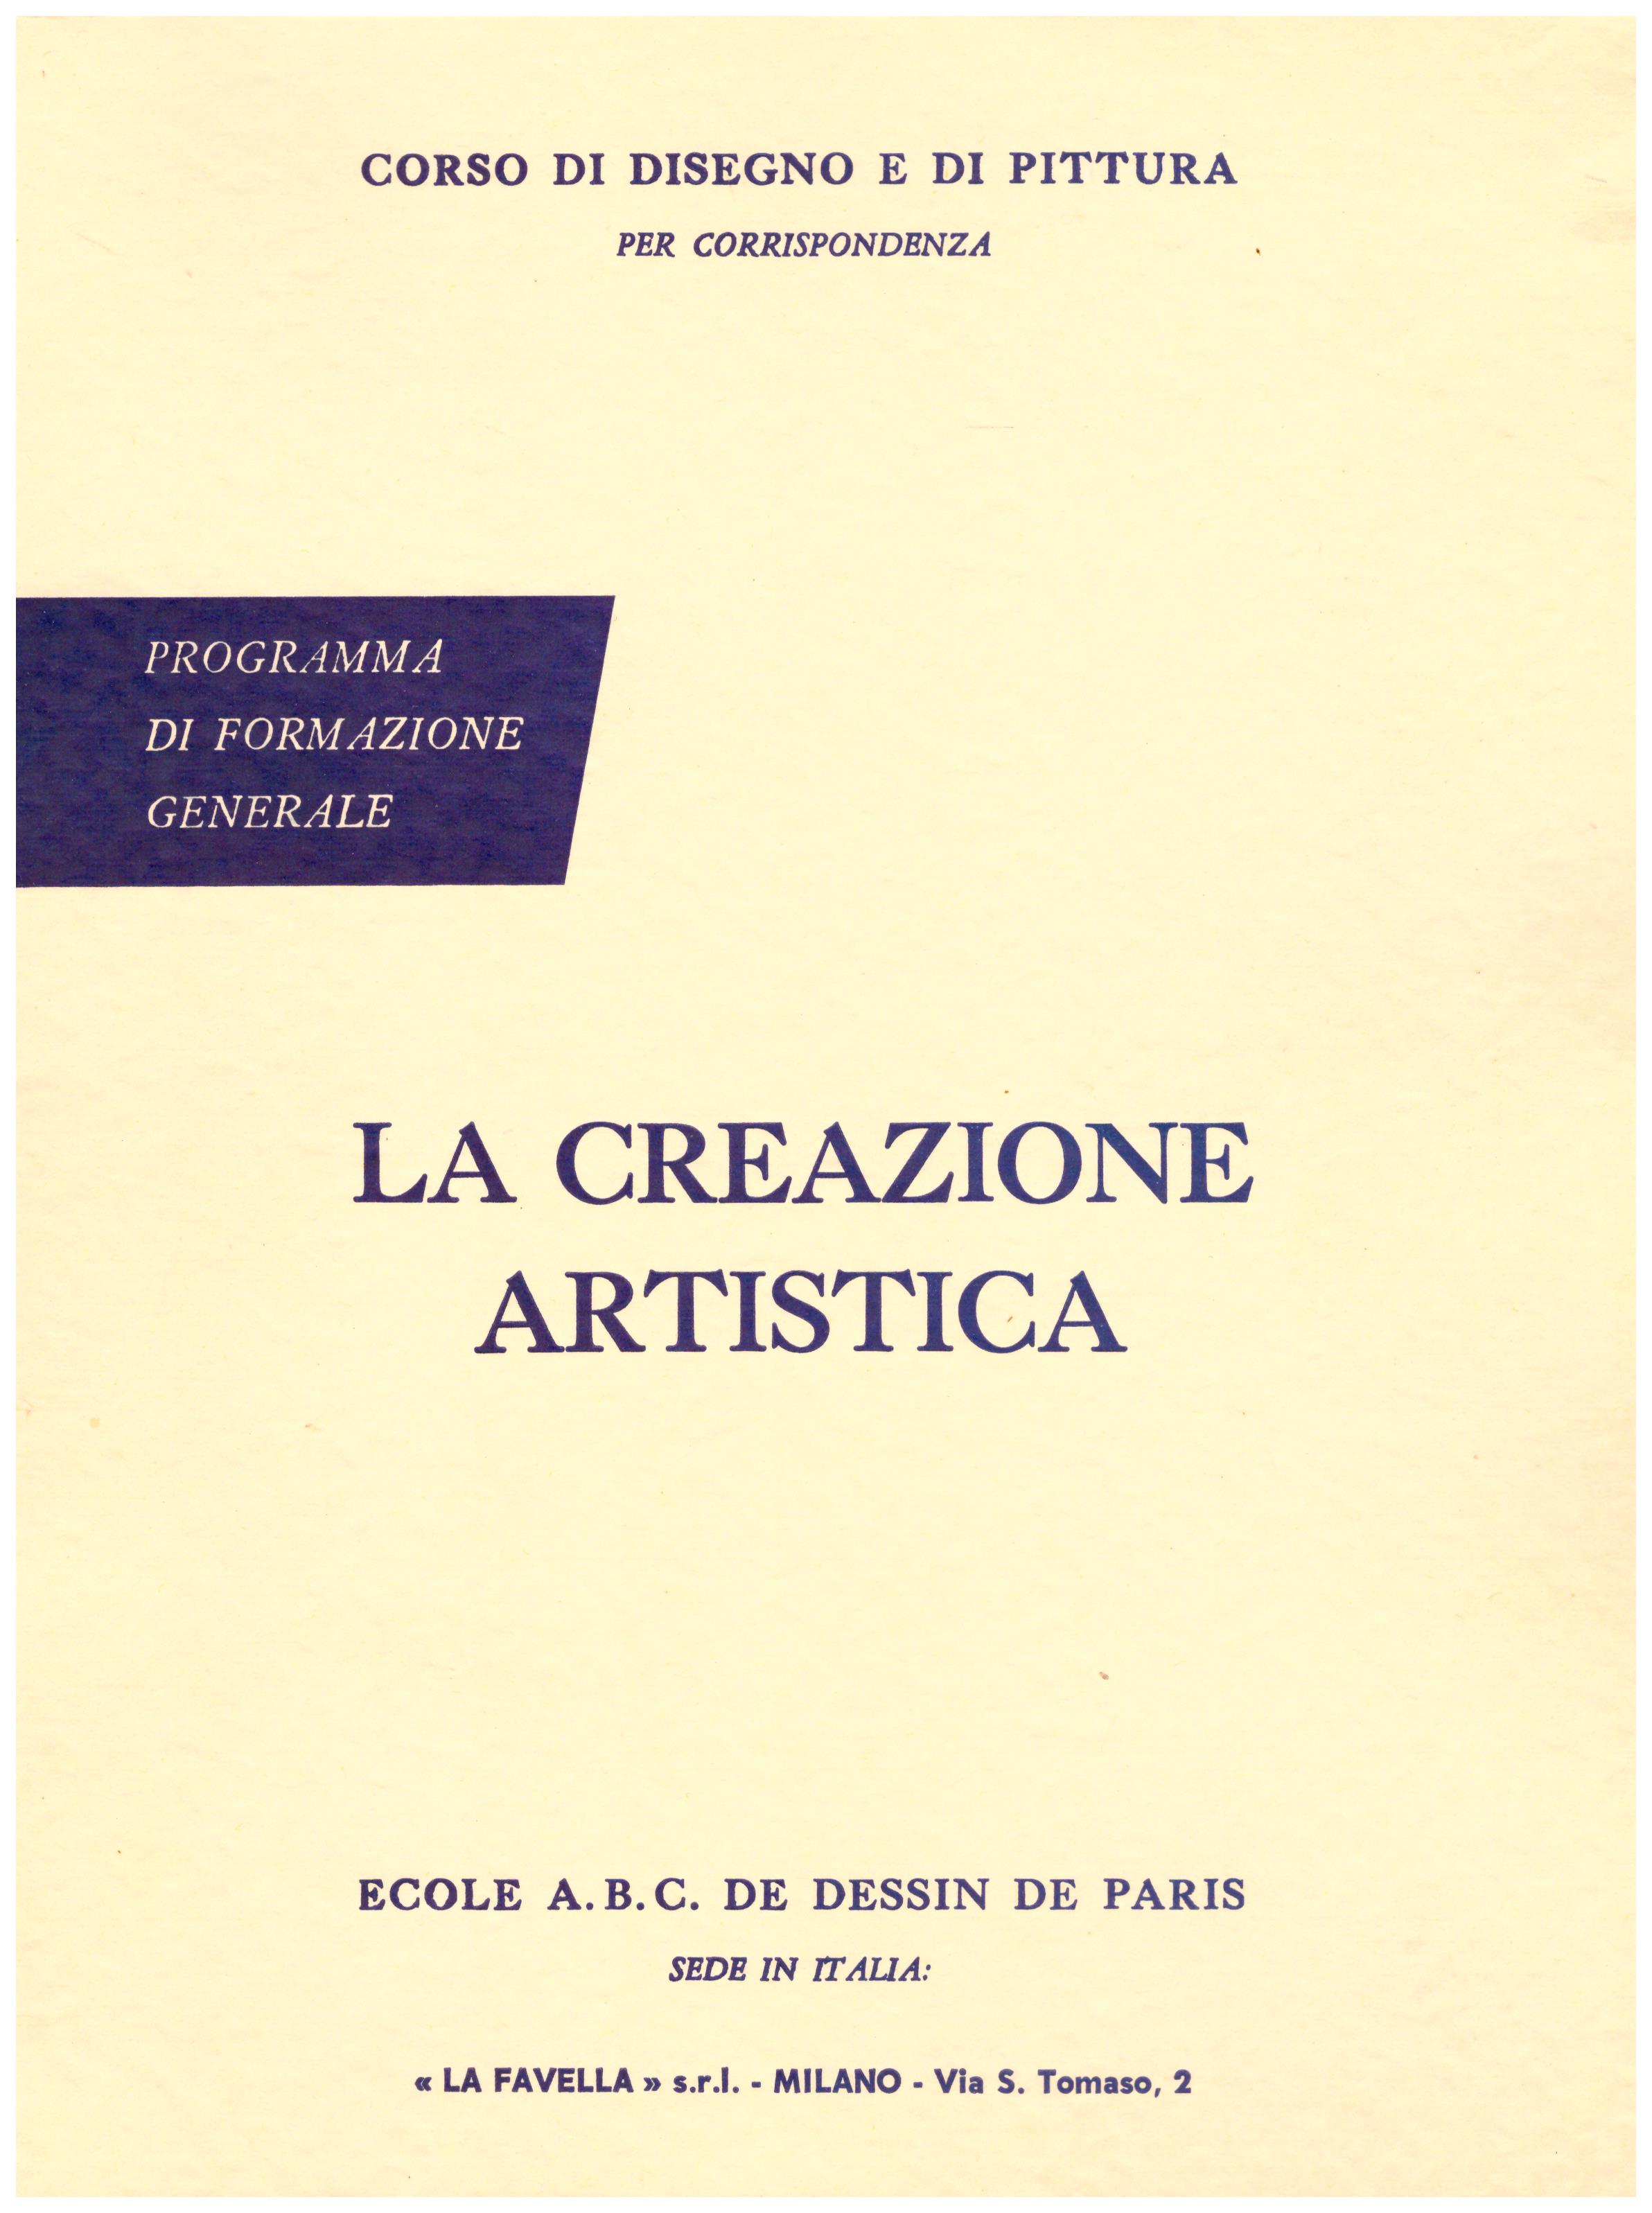 Titolo: Corso di disegno e pittura, la creazione artistica Autore: AA.VV.  Editore: Ecole A.B.C. de dessin de Paris sede in Italia: La Favella, Milano 1962